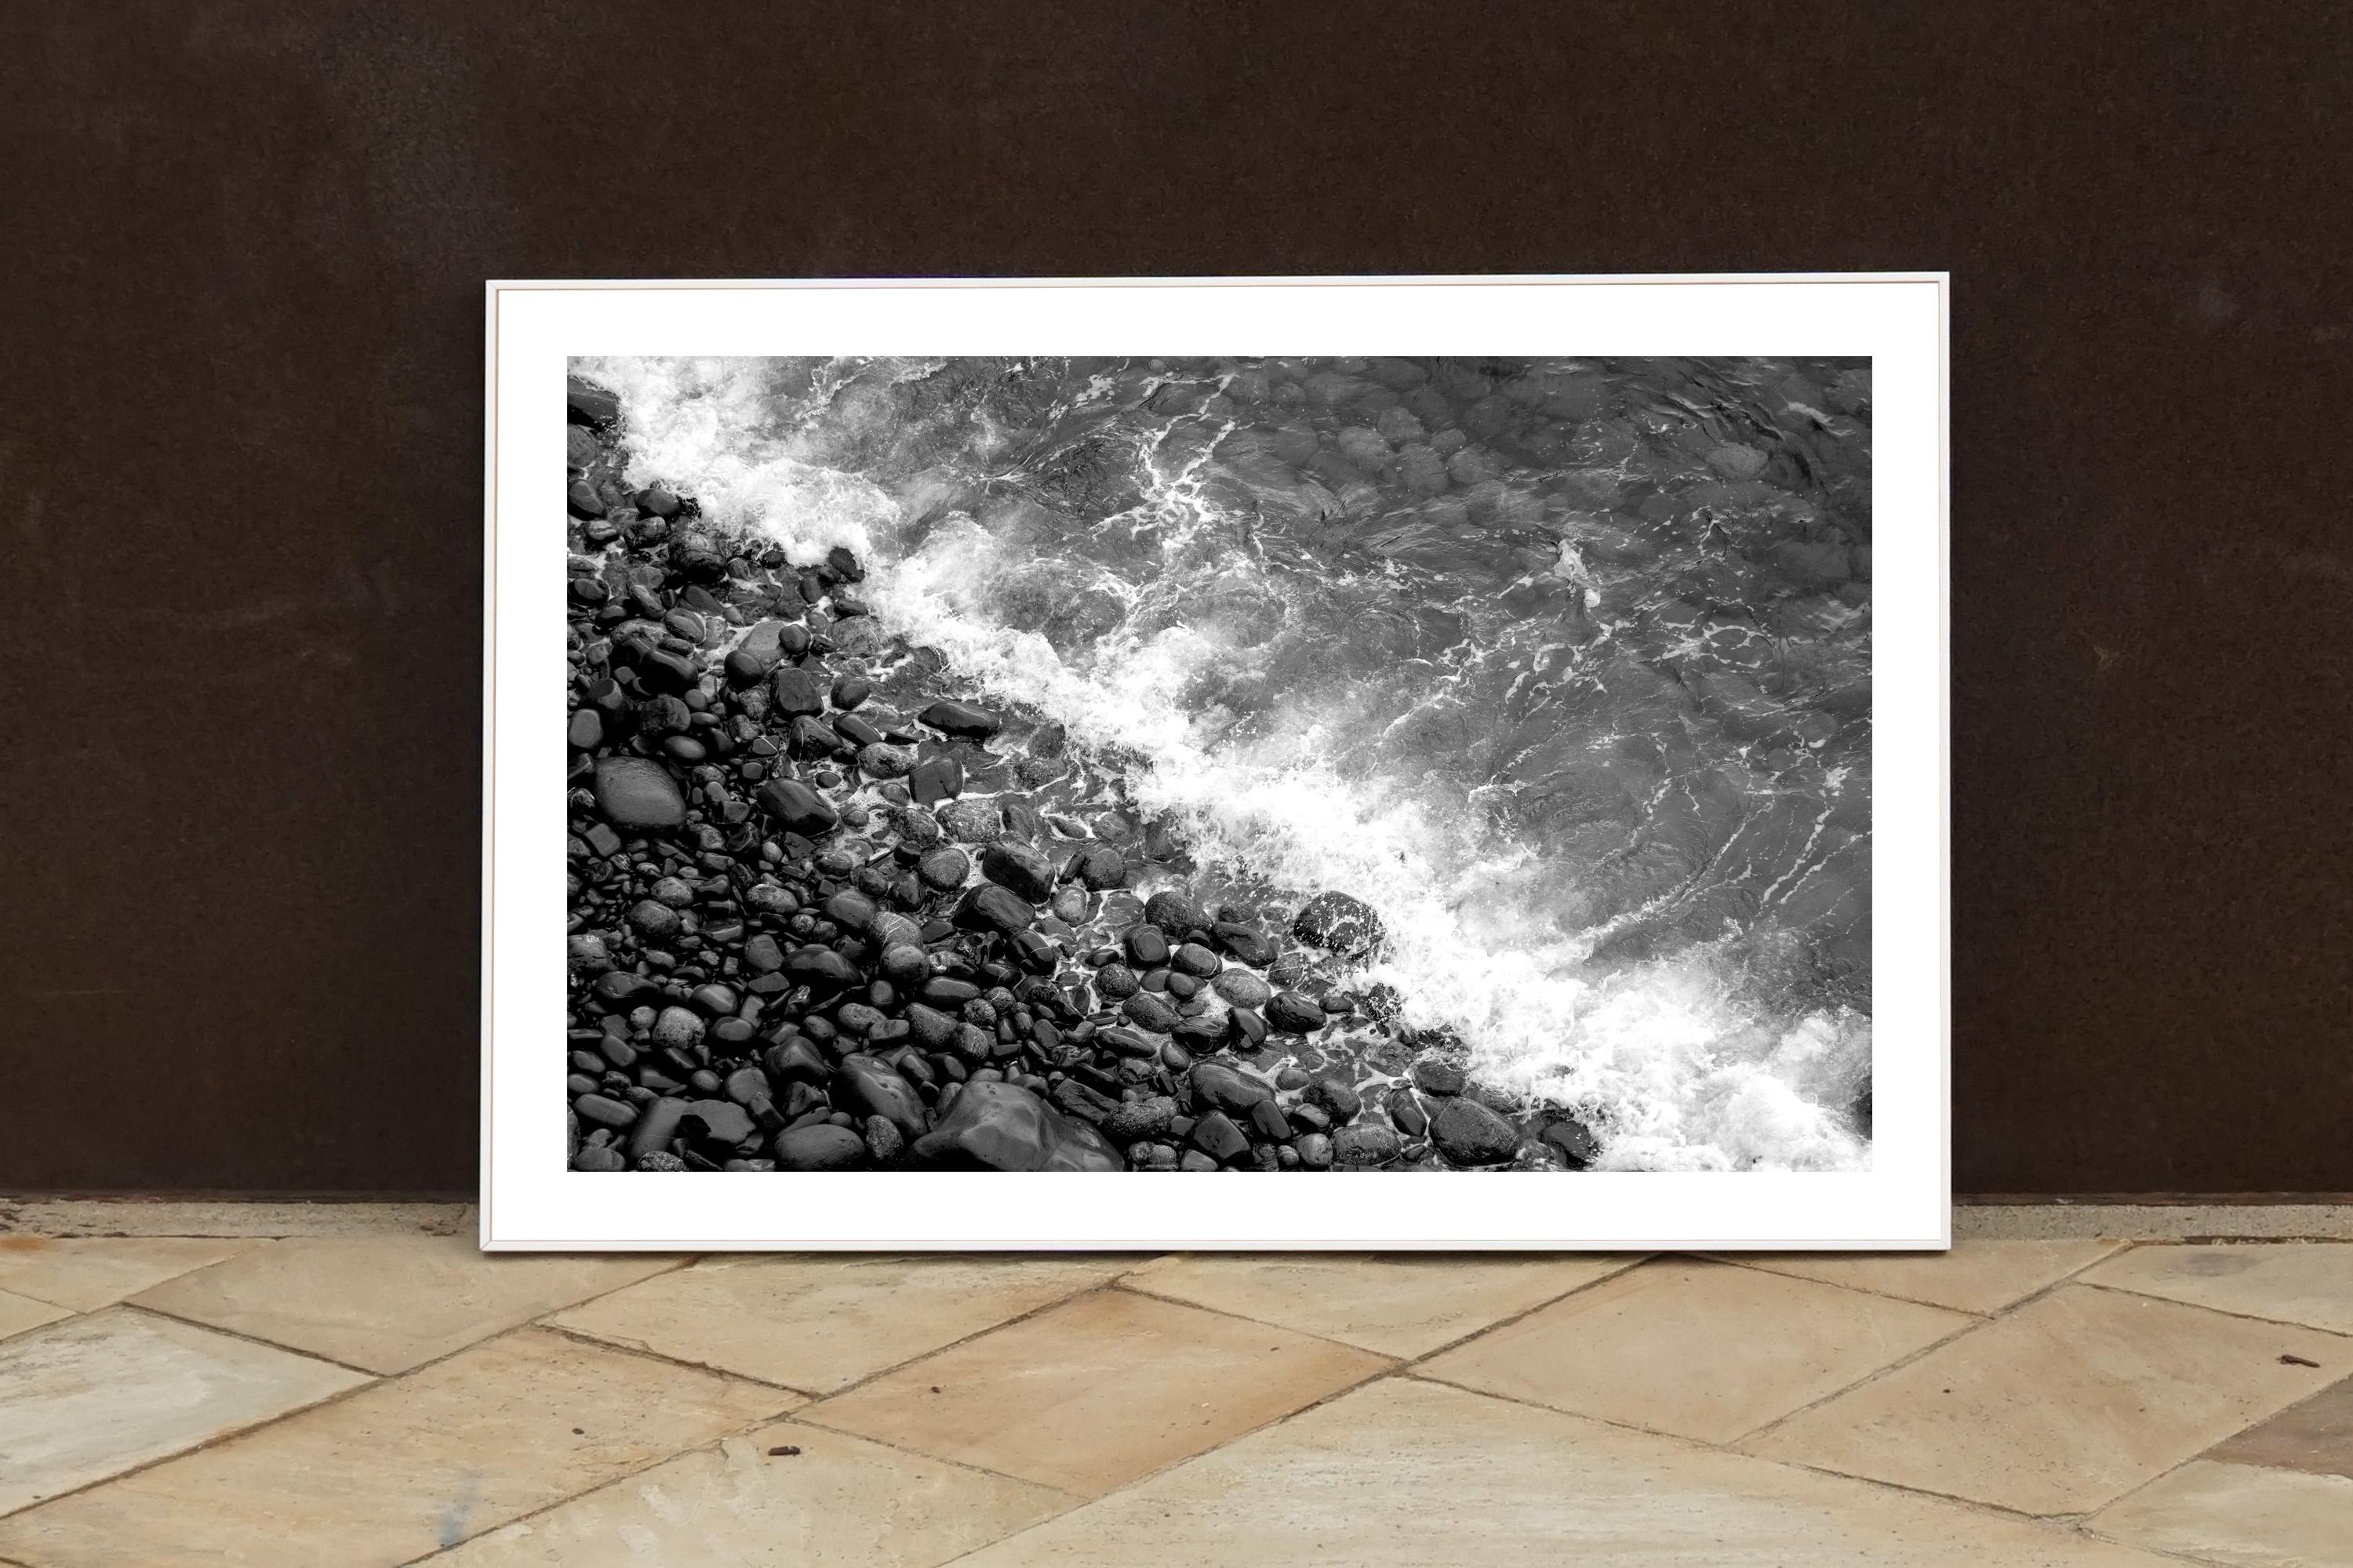 Black & White Shore Line, Giclée-Druck in limitierter Auflage vom britischen Pebble Beach (Realismus), Photograph, von Kind of Cyan